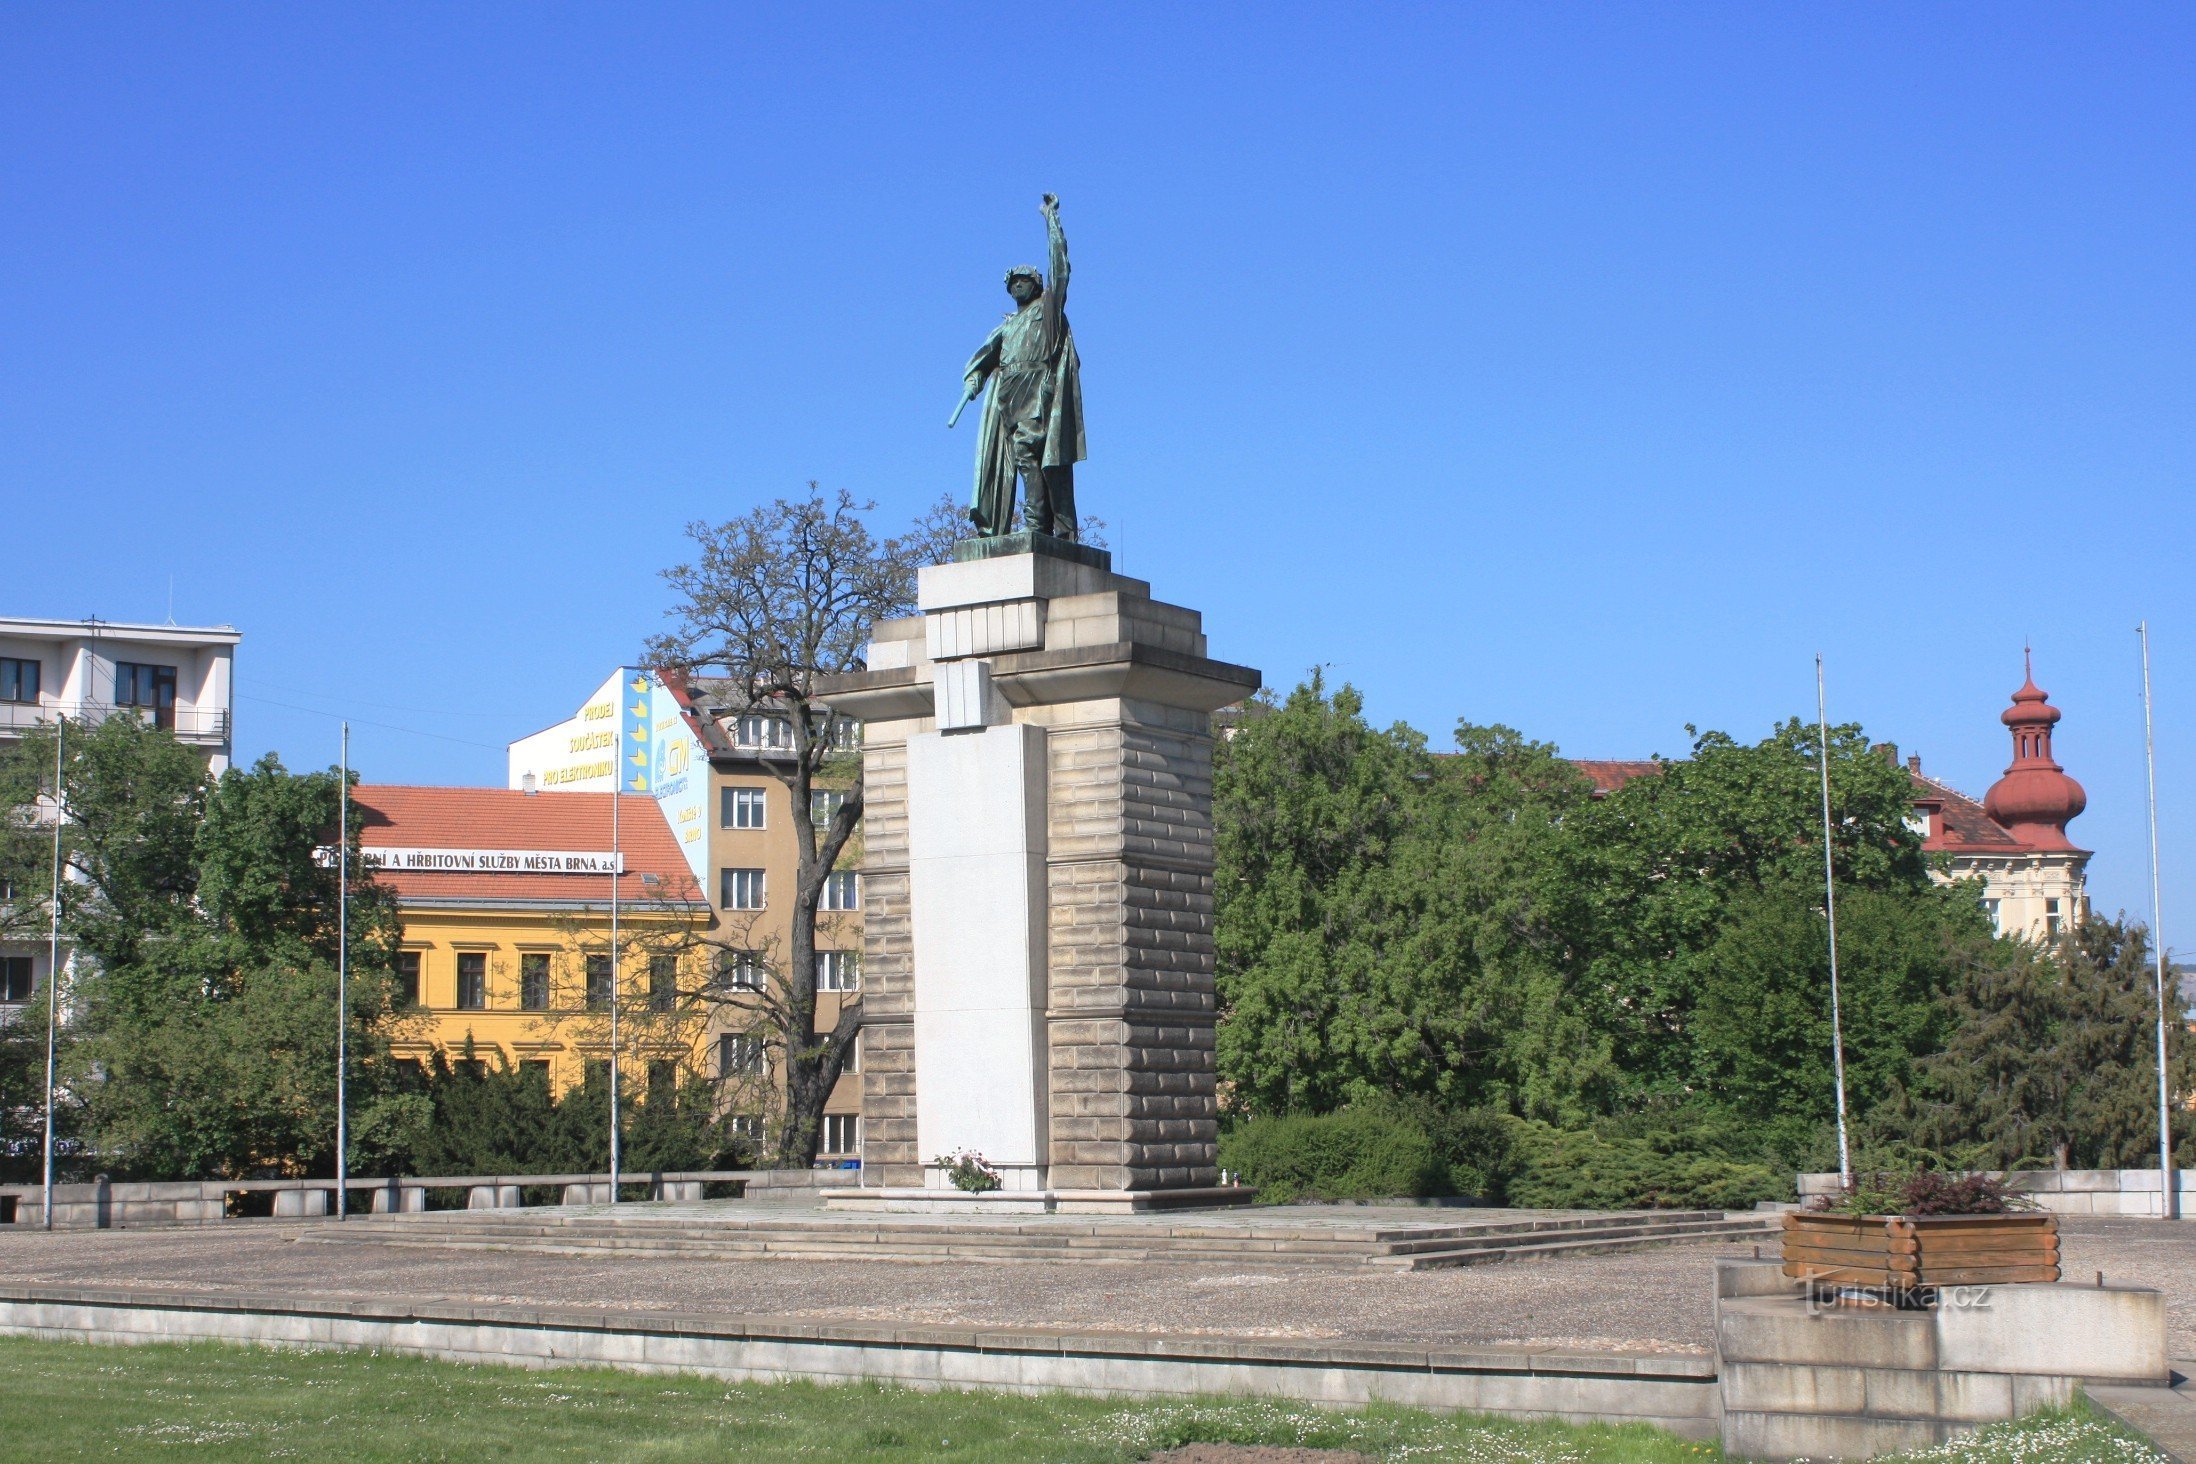 Tượng đài Hồng quân trên Moravské náměstí (tháng 2010 năm XNUMX)